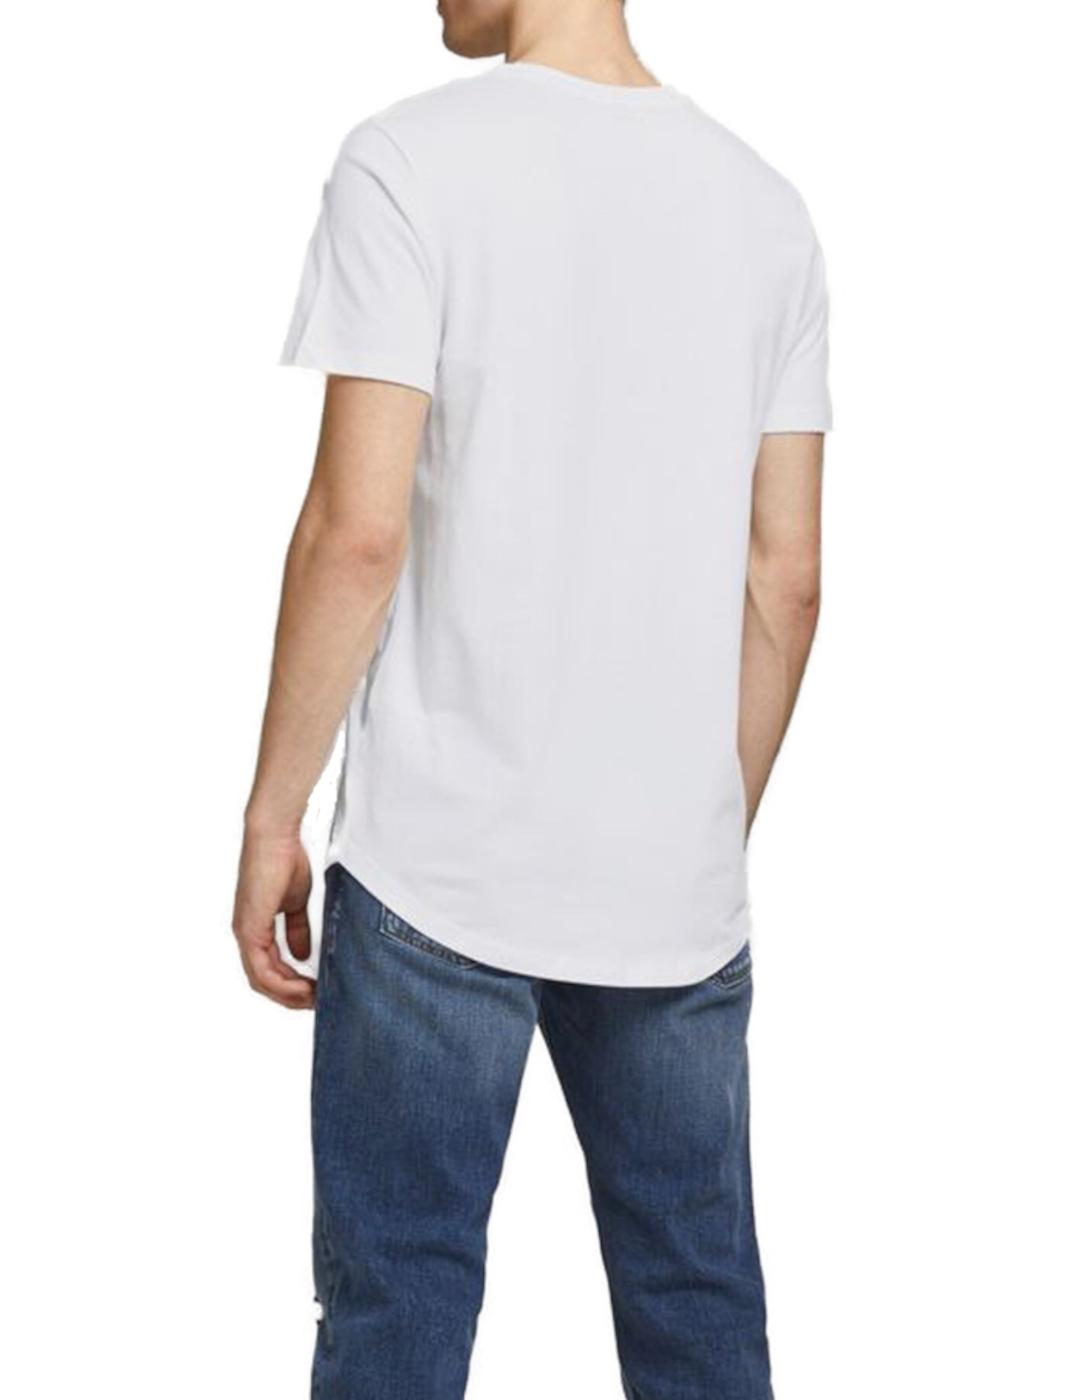 Camiseta Jack&Jones Enoa Noos blanca de hombre